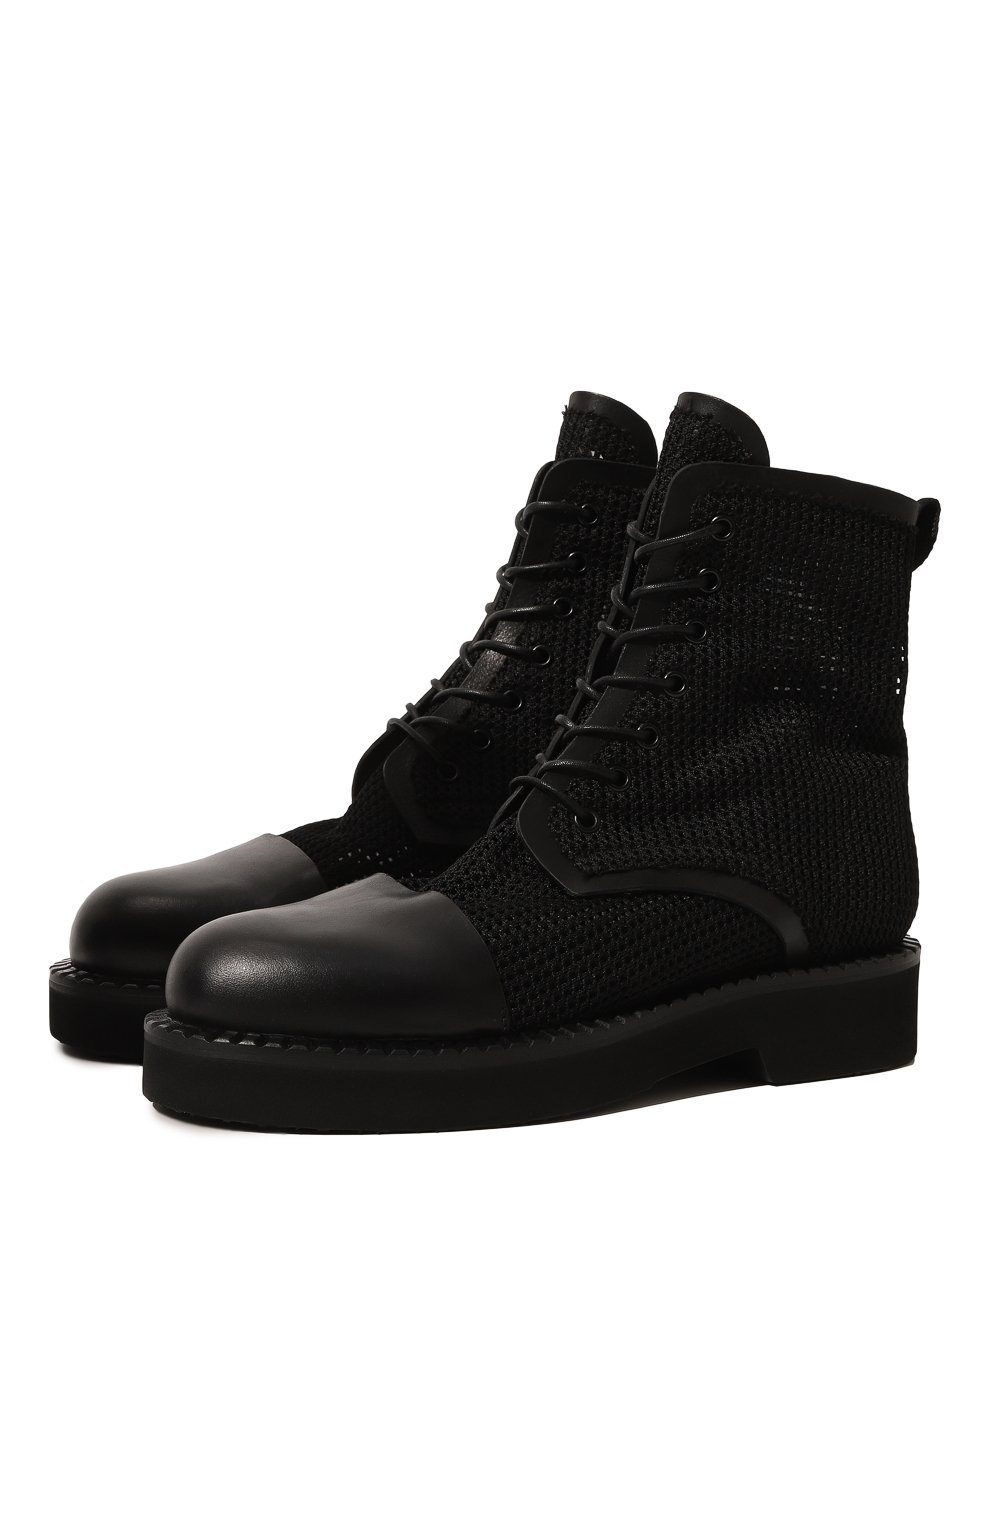 Комбинированные ботинки Premiata M6503/NEW R0DY YUK0N, цвет чёрный, размер 37 M6503/NEW R0DY YUK0N - фото 1